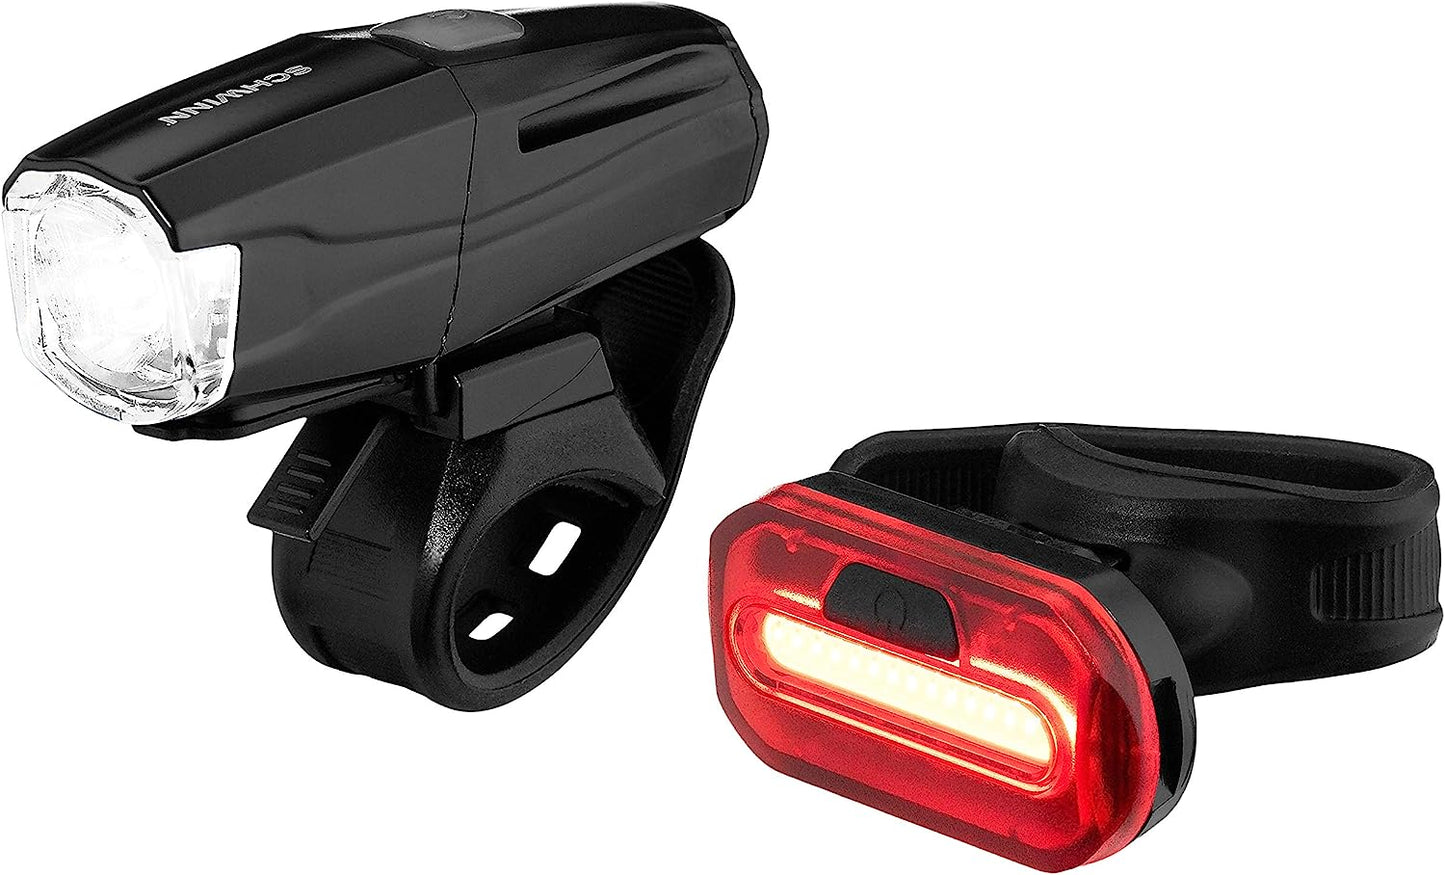 Schwinn Quick Wrap RECHARGEABLE 400 Lumen Bike Light Set Headlight & Taillight